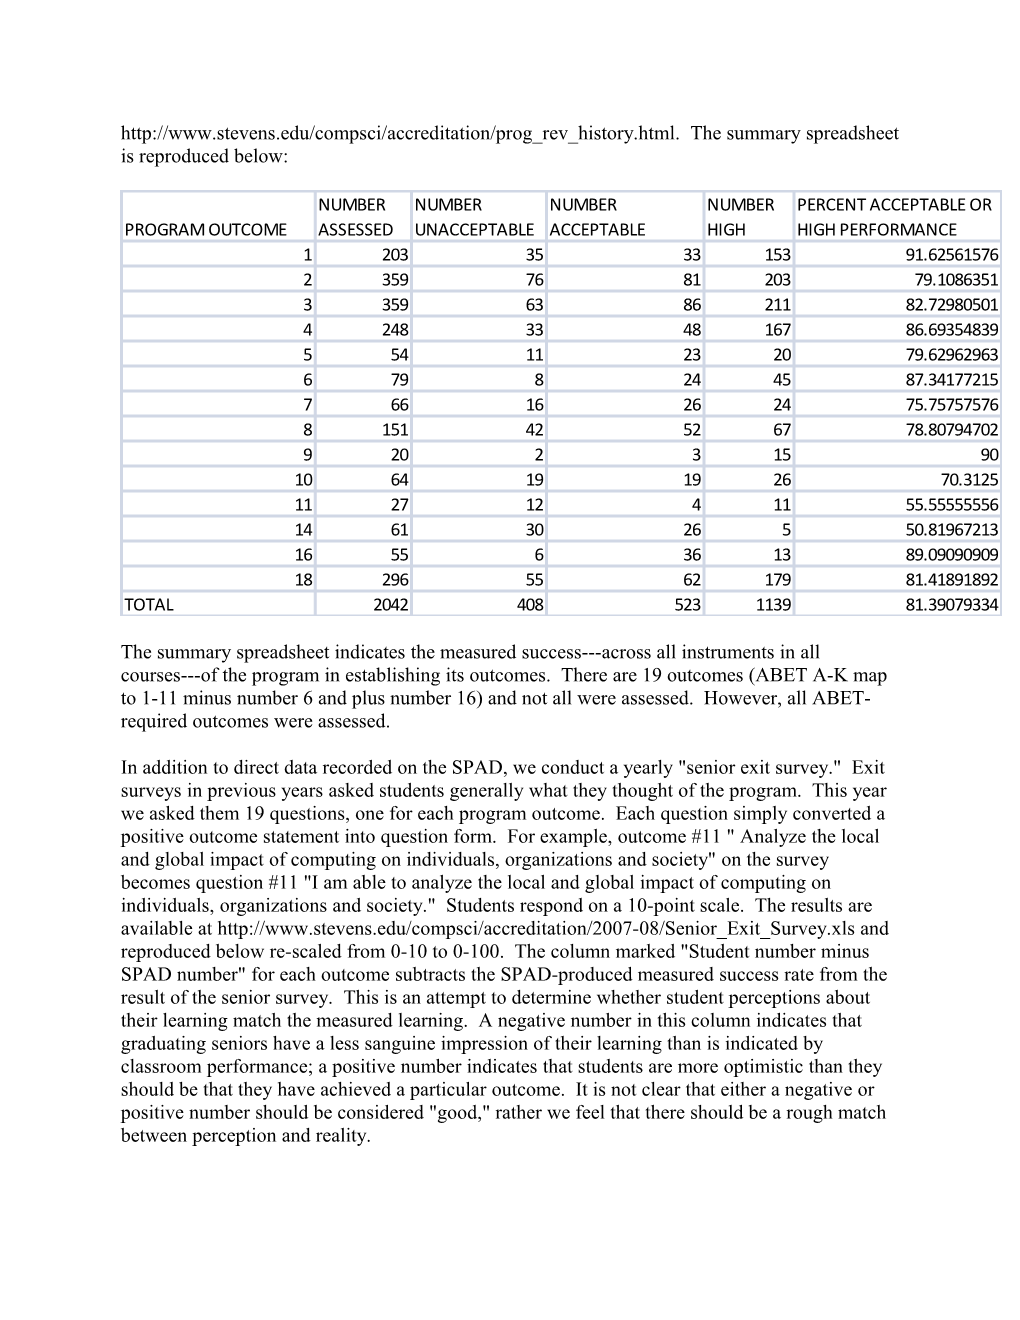 Stevens BS-CS Program Evaluation Report for 2007-08